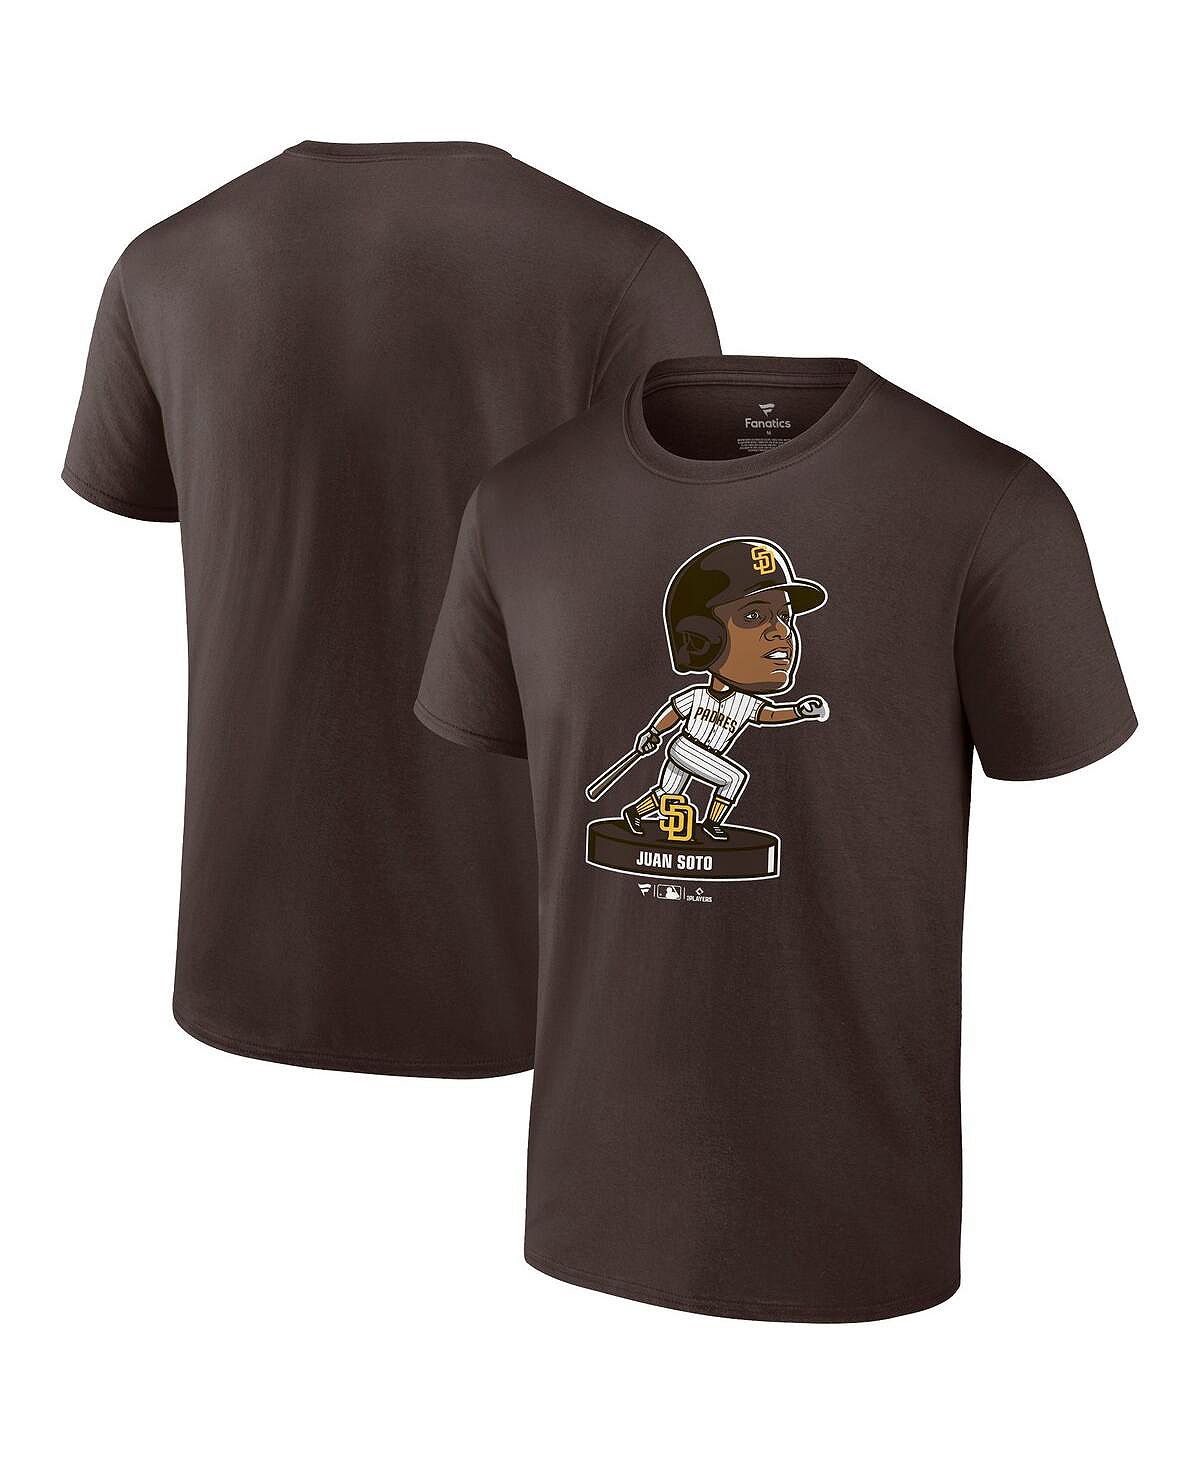 Мужская фирменная футболка juan soto brown san diego padres с качающейся головой Fanatics, коричневый